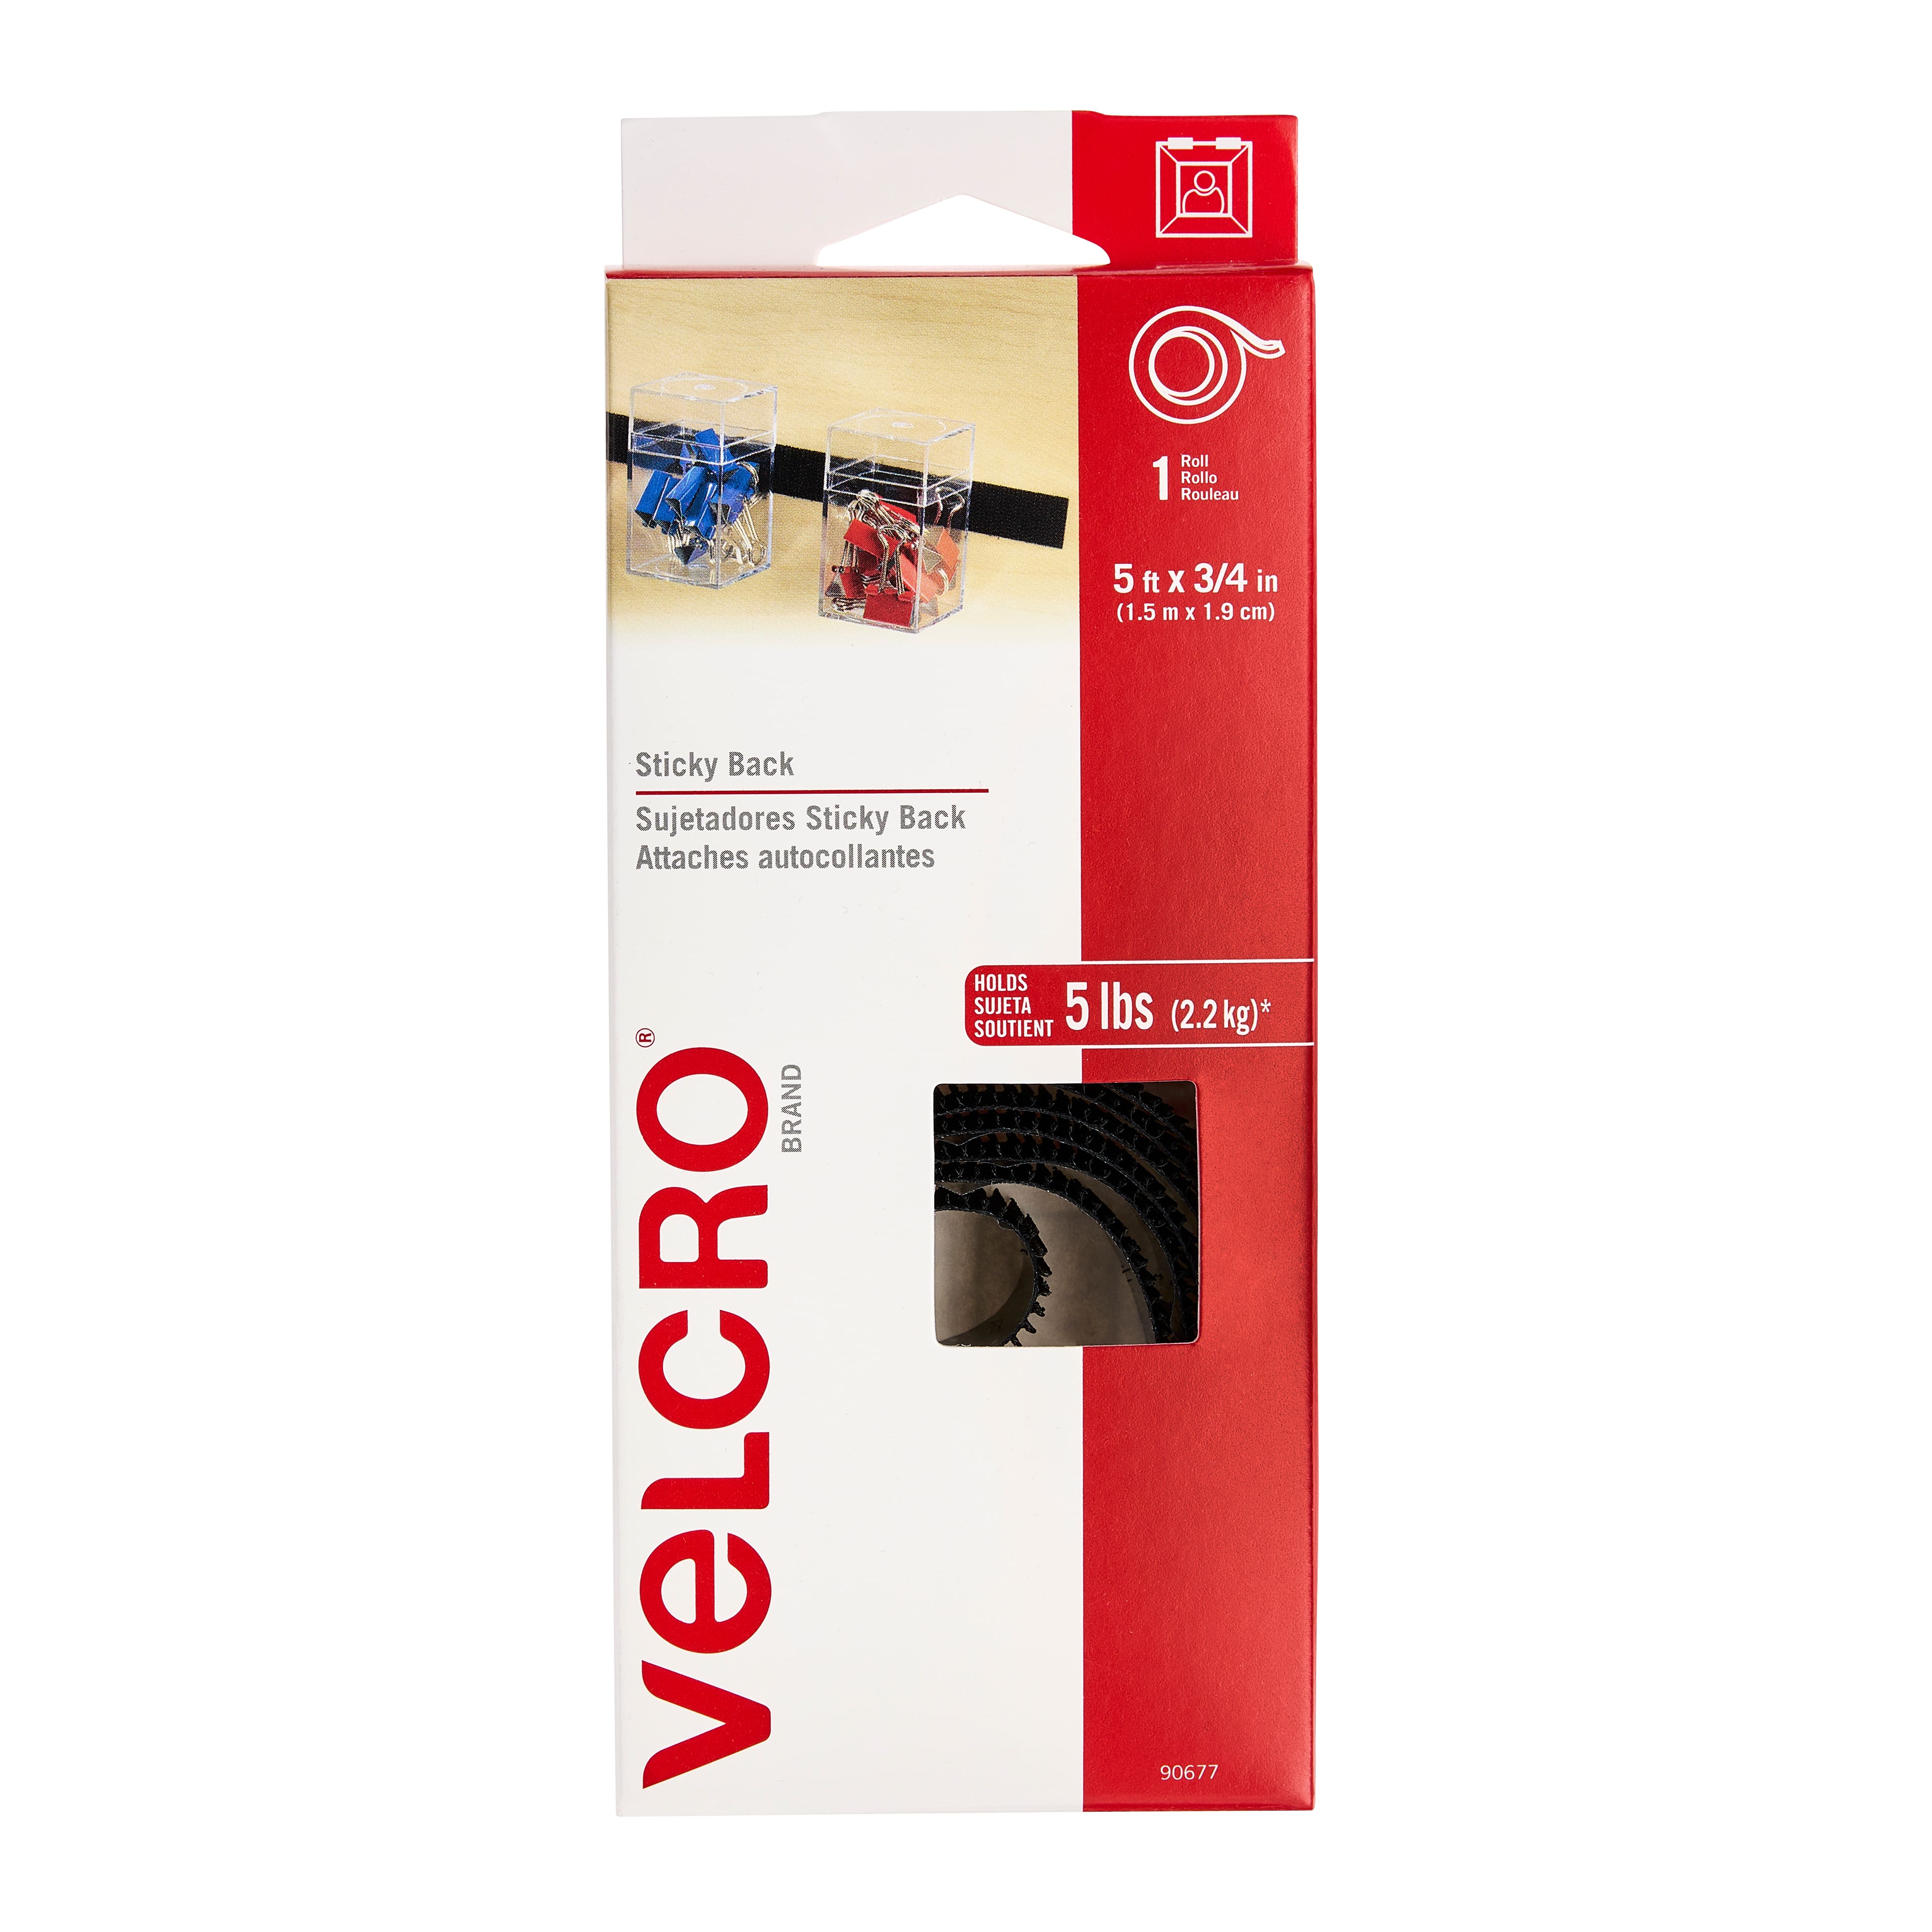 Velcro Brand - Sticky Back - 5' x 3/4 Tape - Black